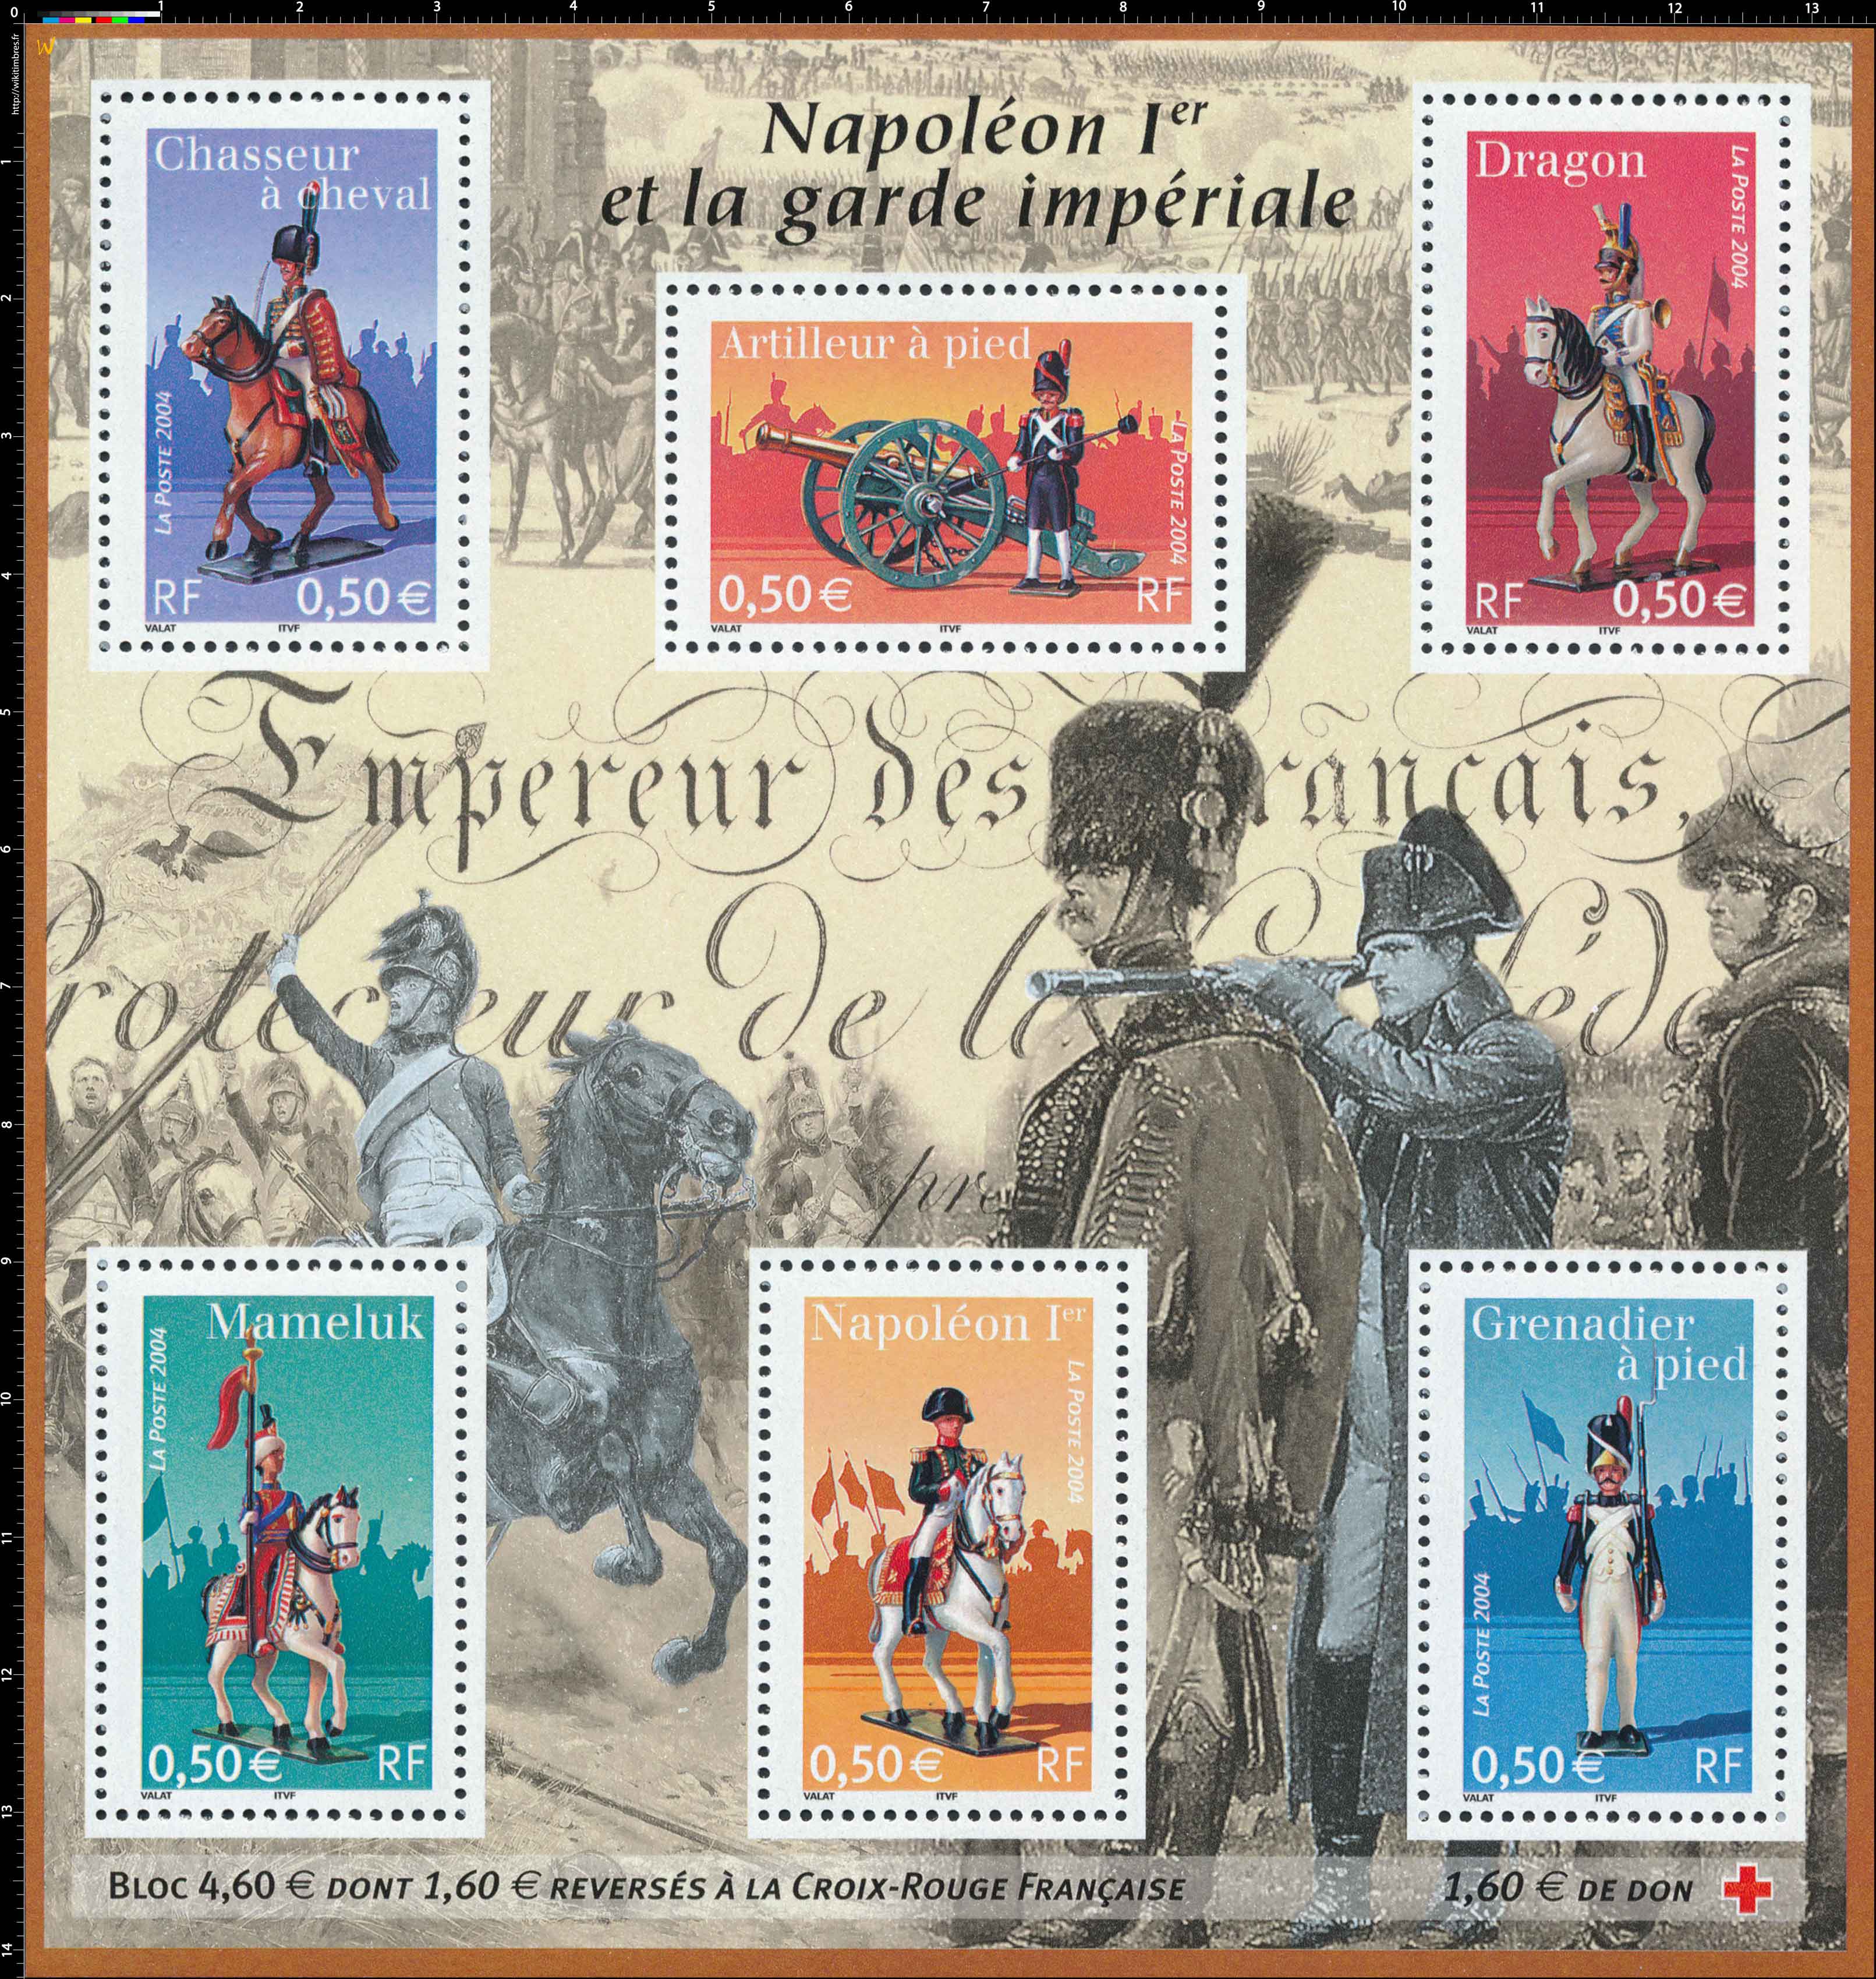 2004 Napoléon Ier et la garde impériale